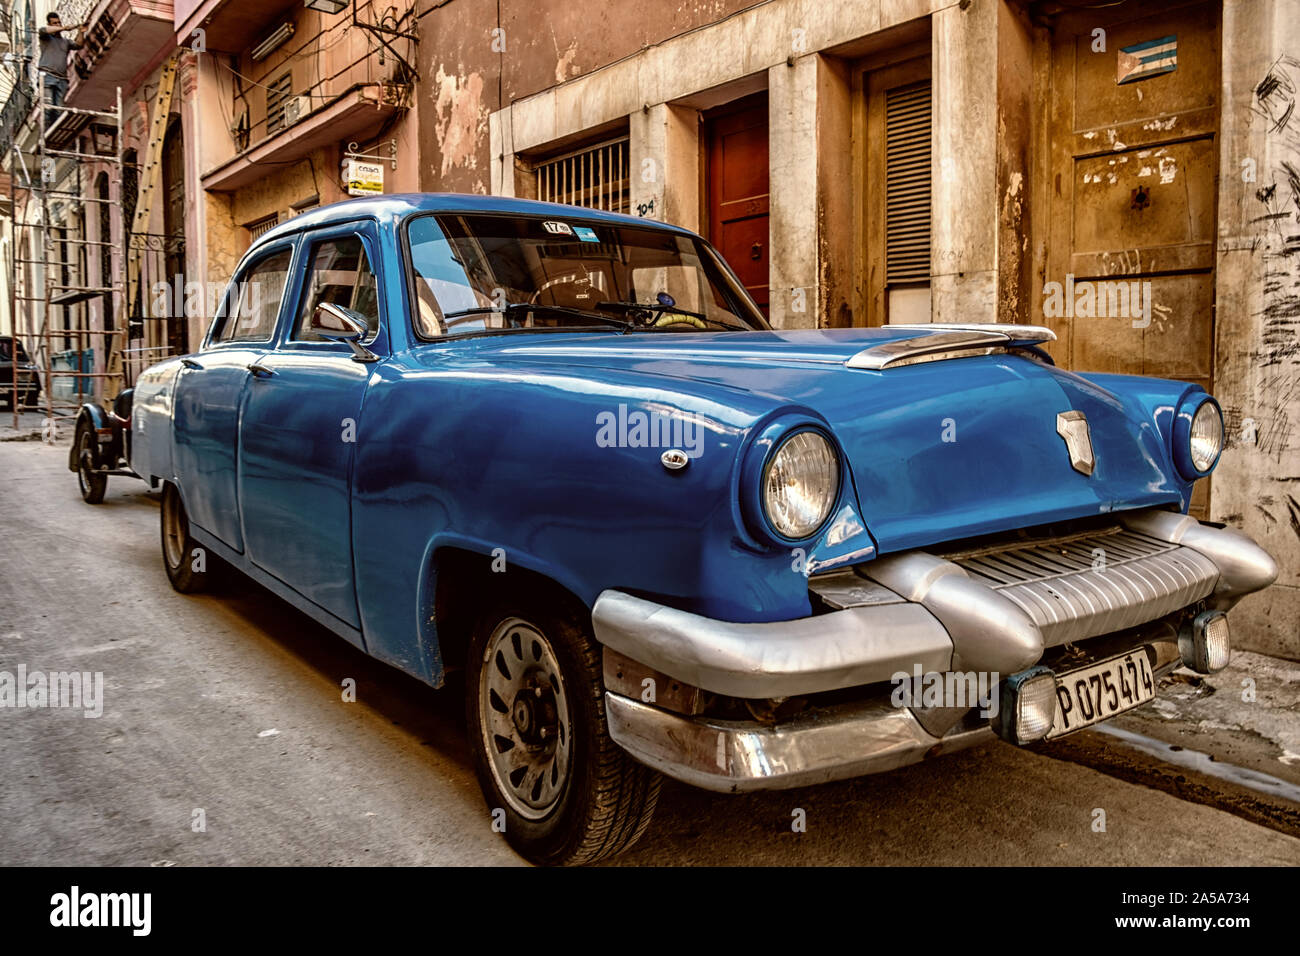 Scène de rue avec Blue Vintage Classic voiture américaine, La Havane, Cuba Banque D'Images